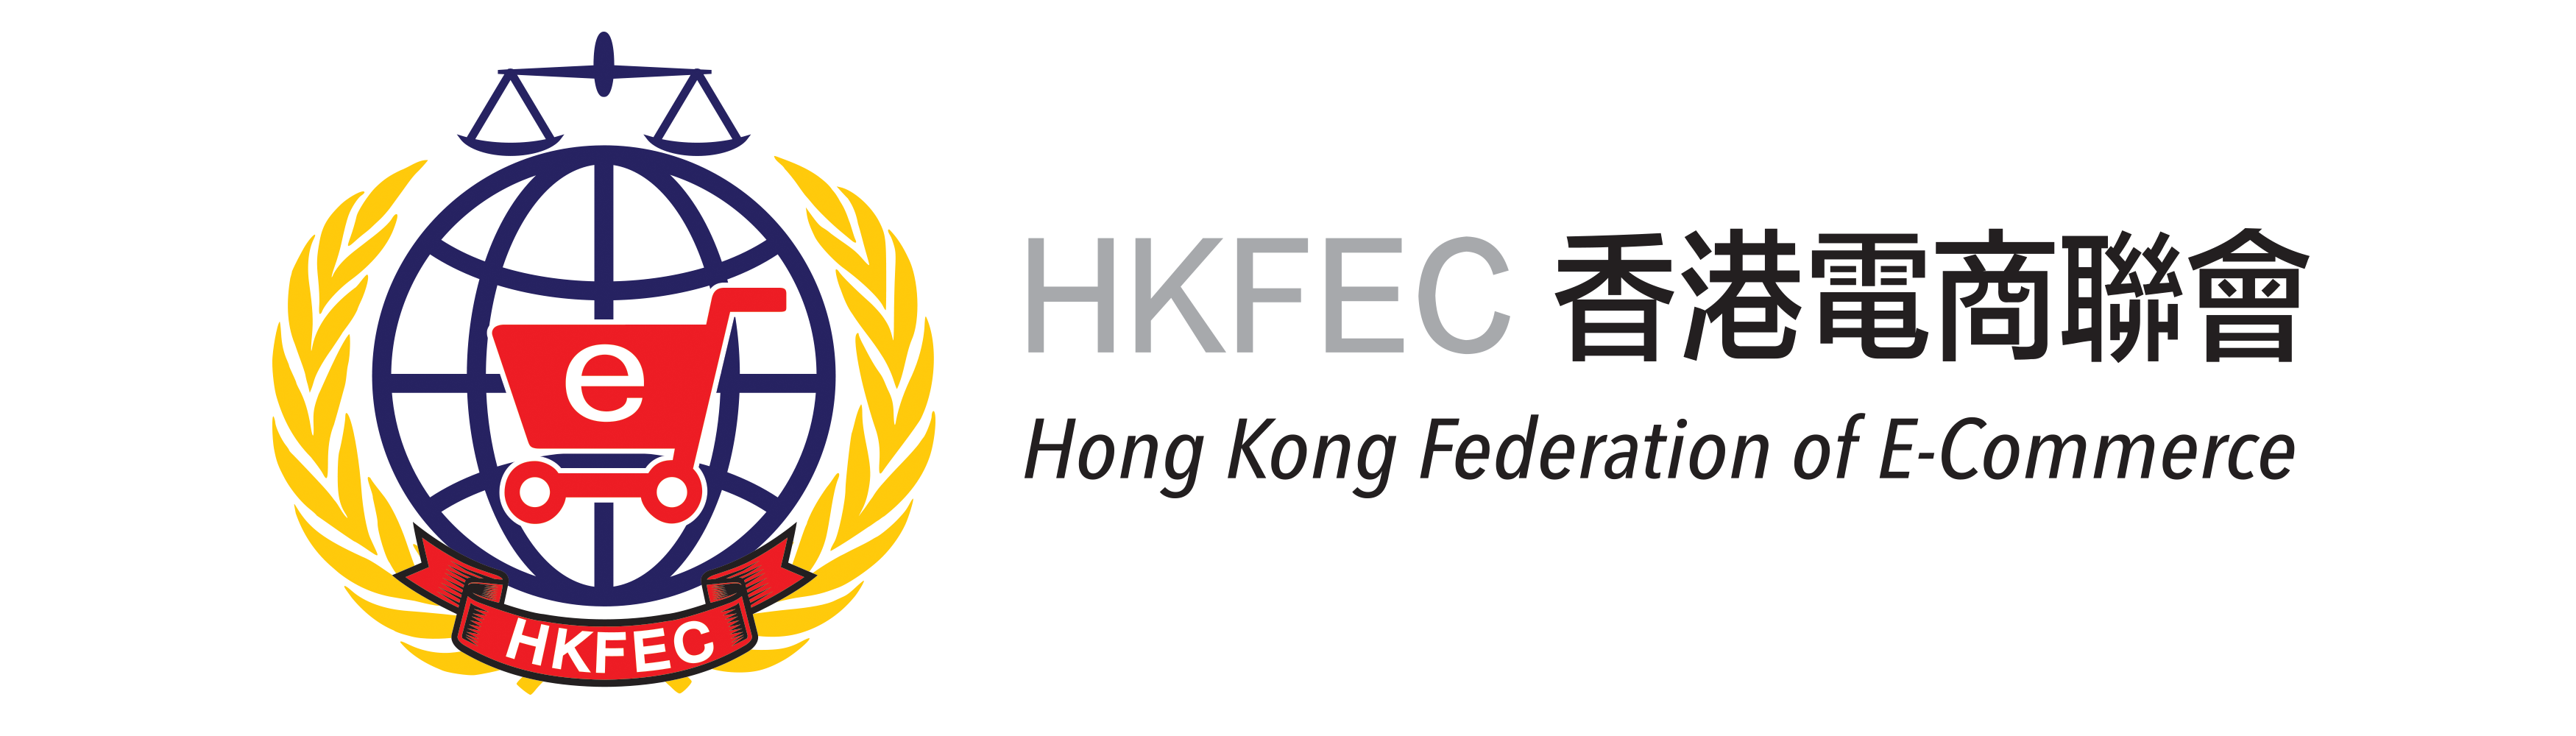 Hong Kong Federation of E-Commerce